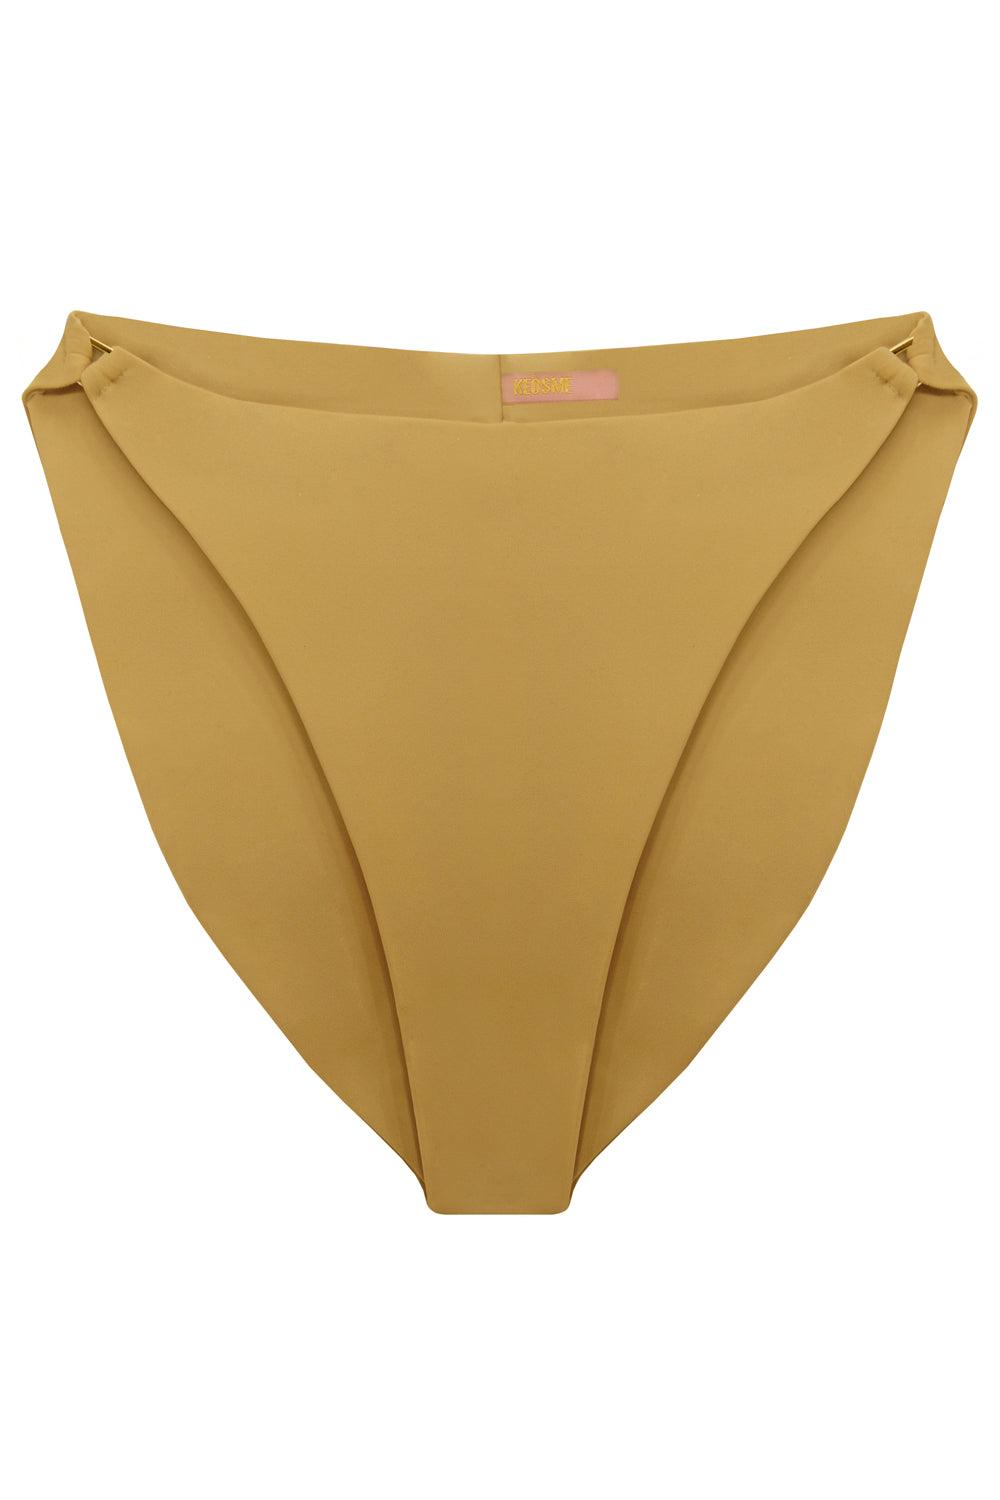 Radiya Golden Beige high waisted bikini bottom - Bikini bottom by yesUndress. Shop on yesUndress